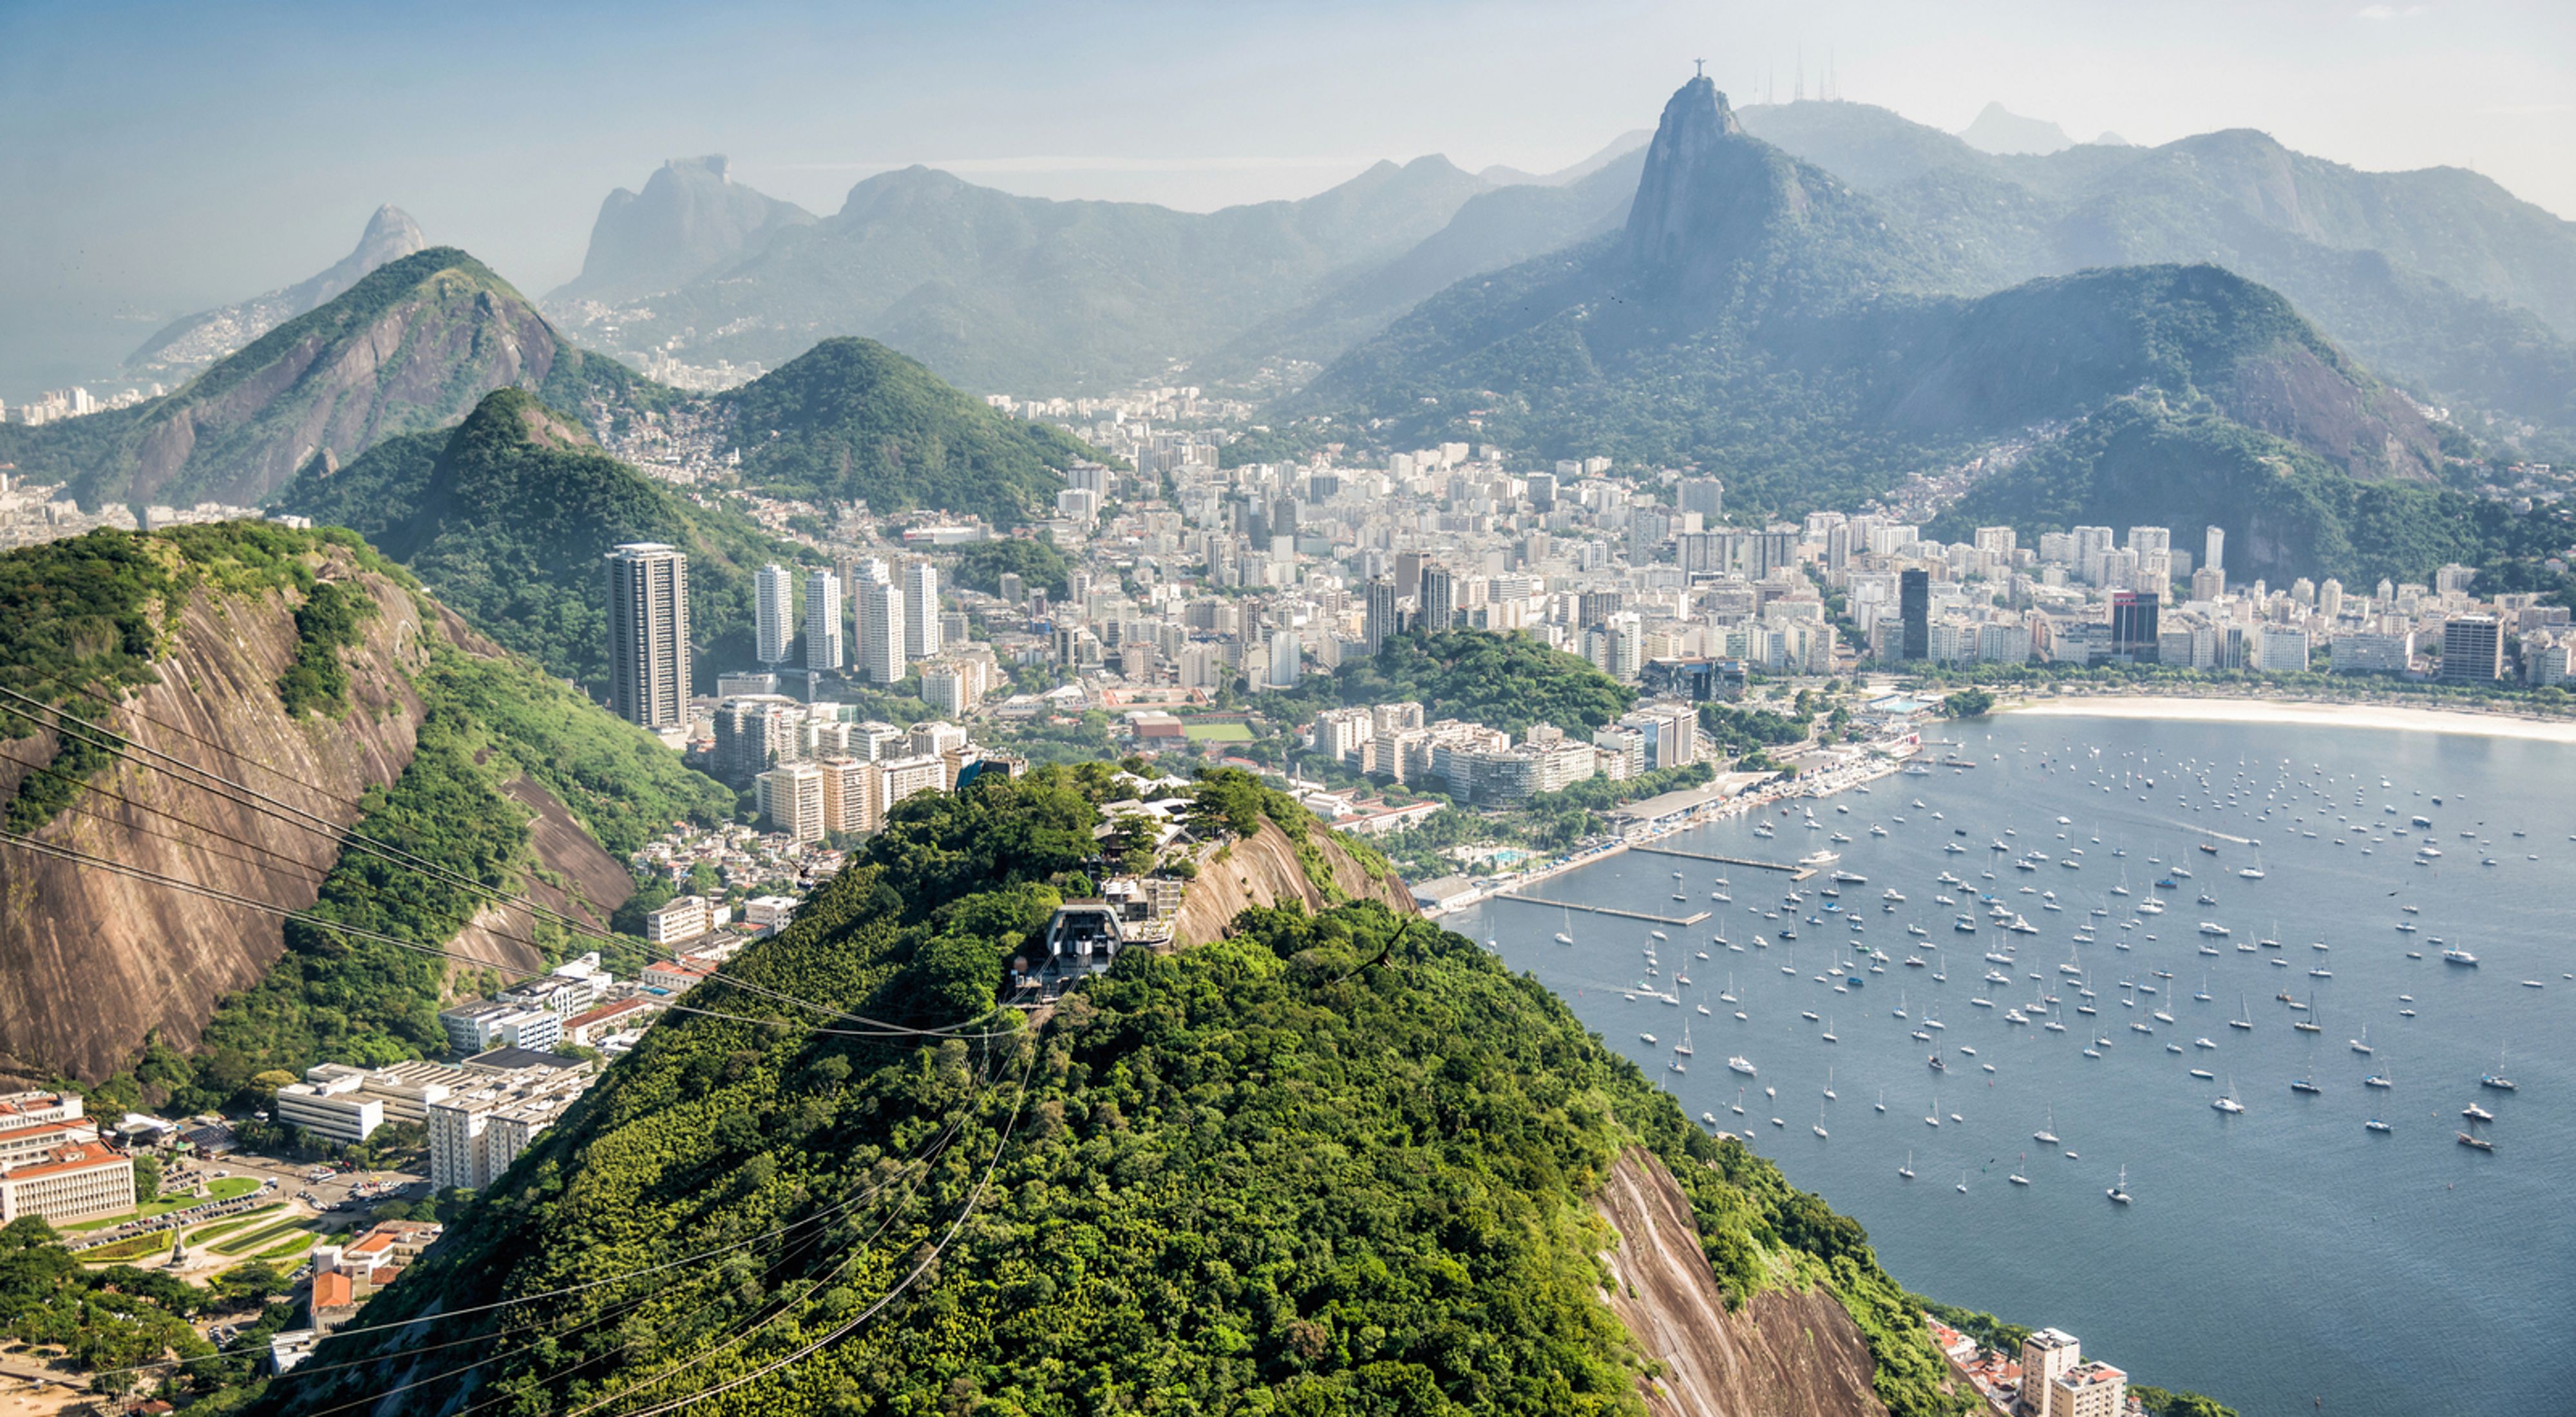  Aerial view of Rio de Janeiro